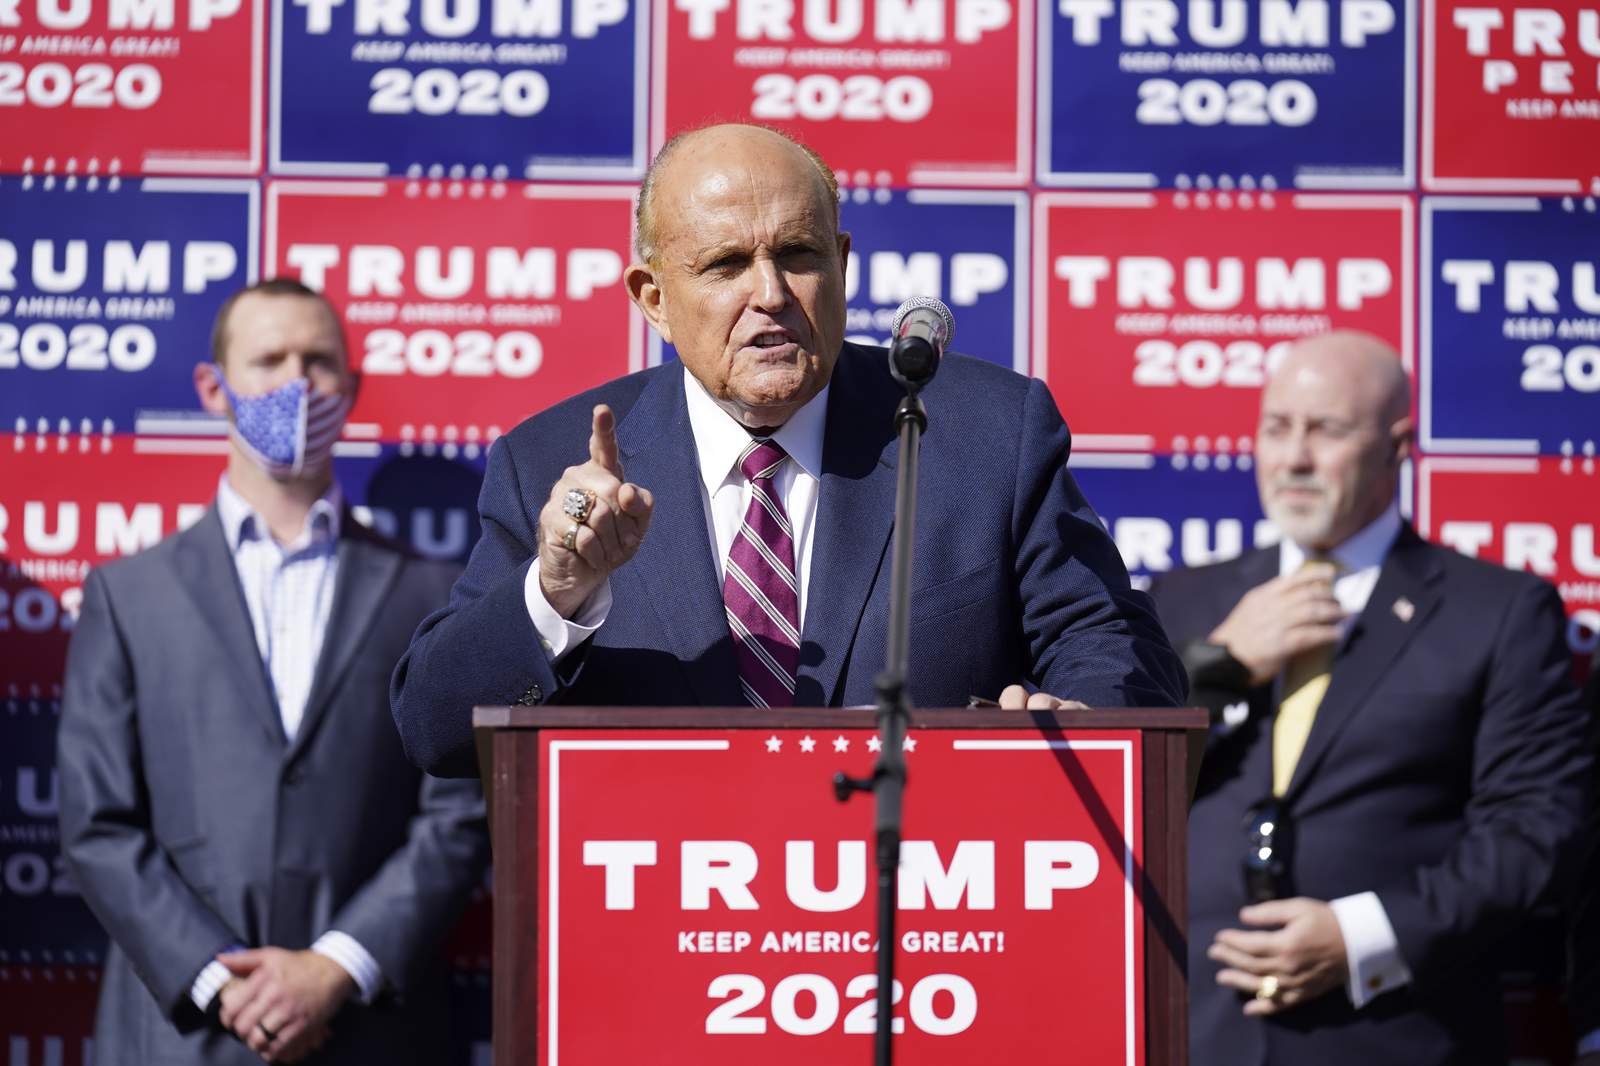 Rudy Giuliani to testify in Michigan hearing on 2020 election